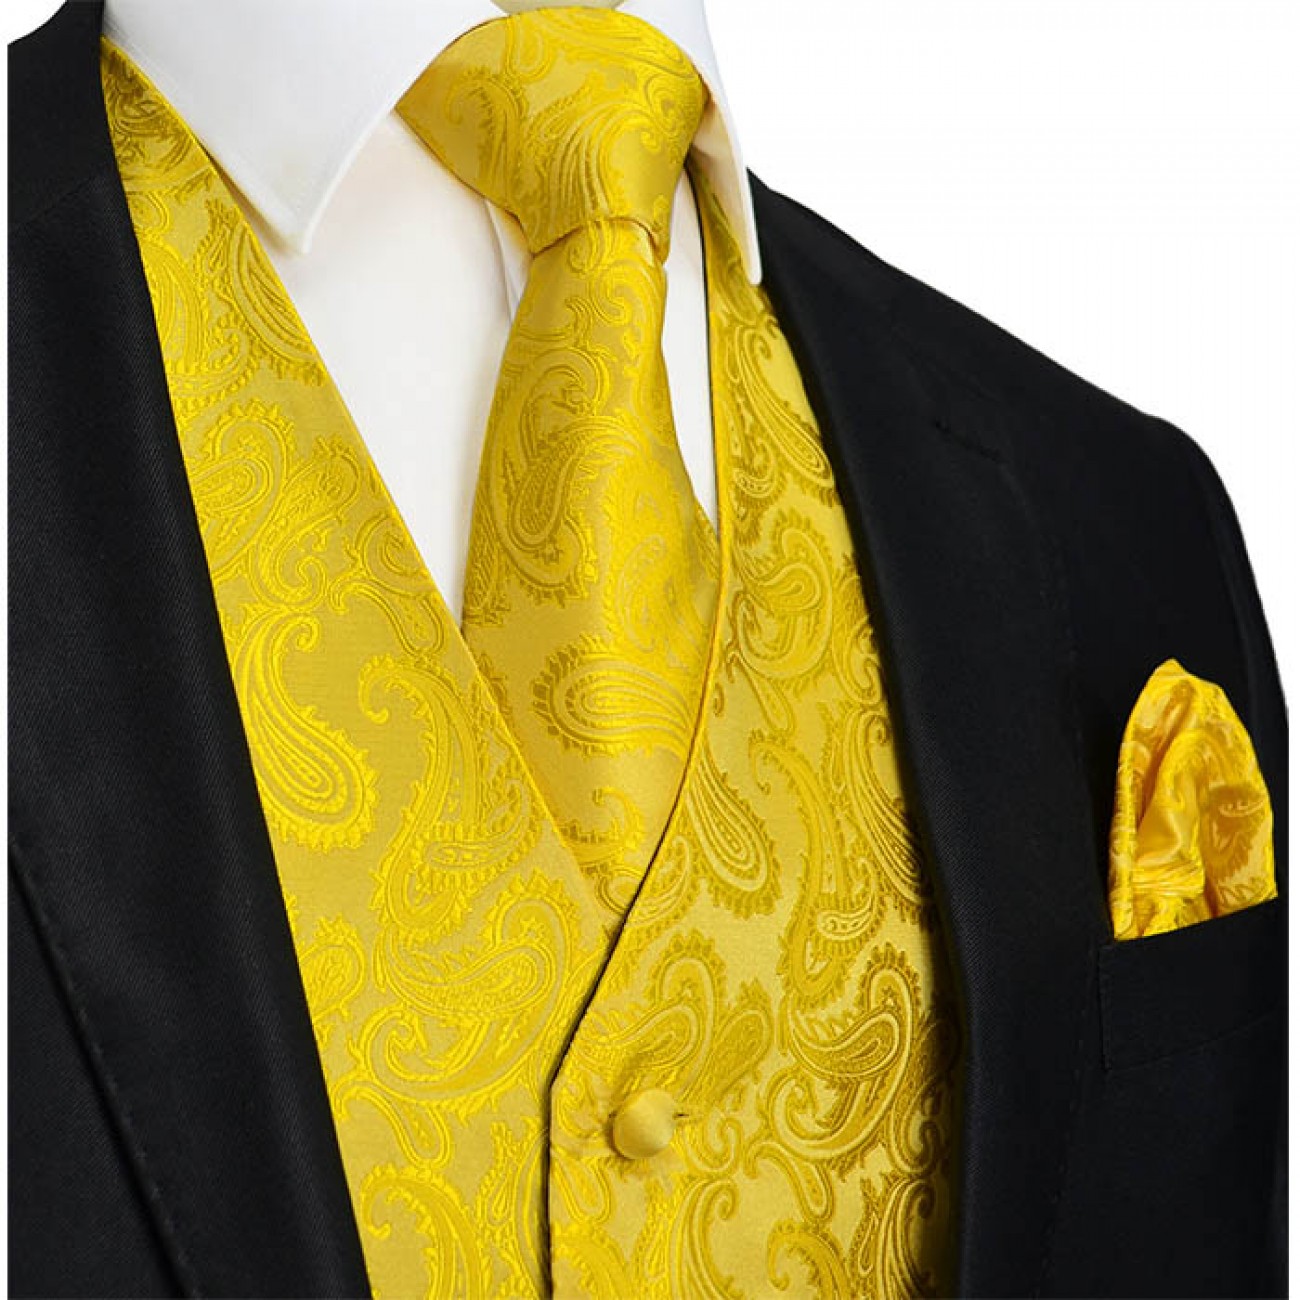 New Men's Yellow formal vest Tuxedo Waistcoat_necktie & hankie set wedding 